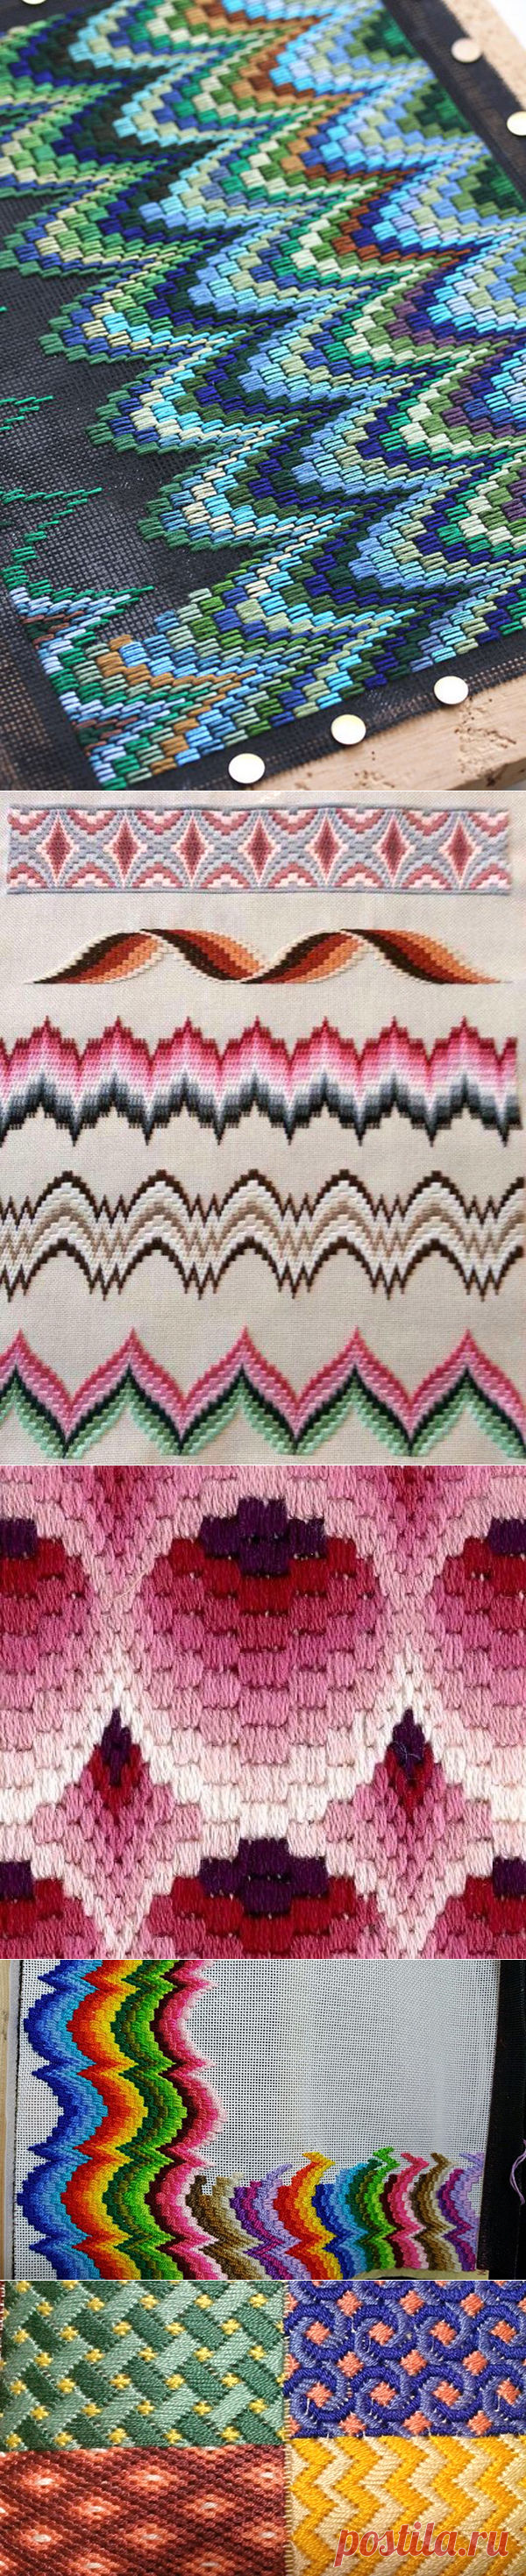 Флорентийская вышивка барджелло: 25 схем разного уровня сложности - Ярмарка Мастеров - ручная работа, handmade